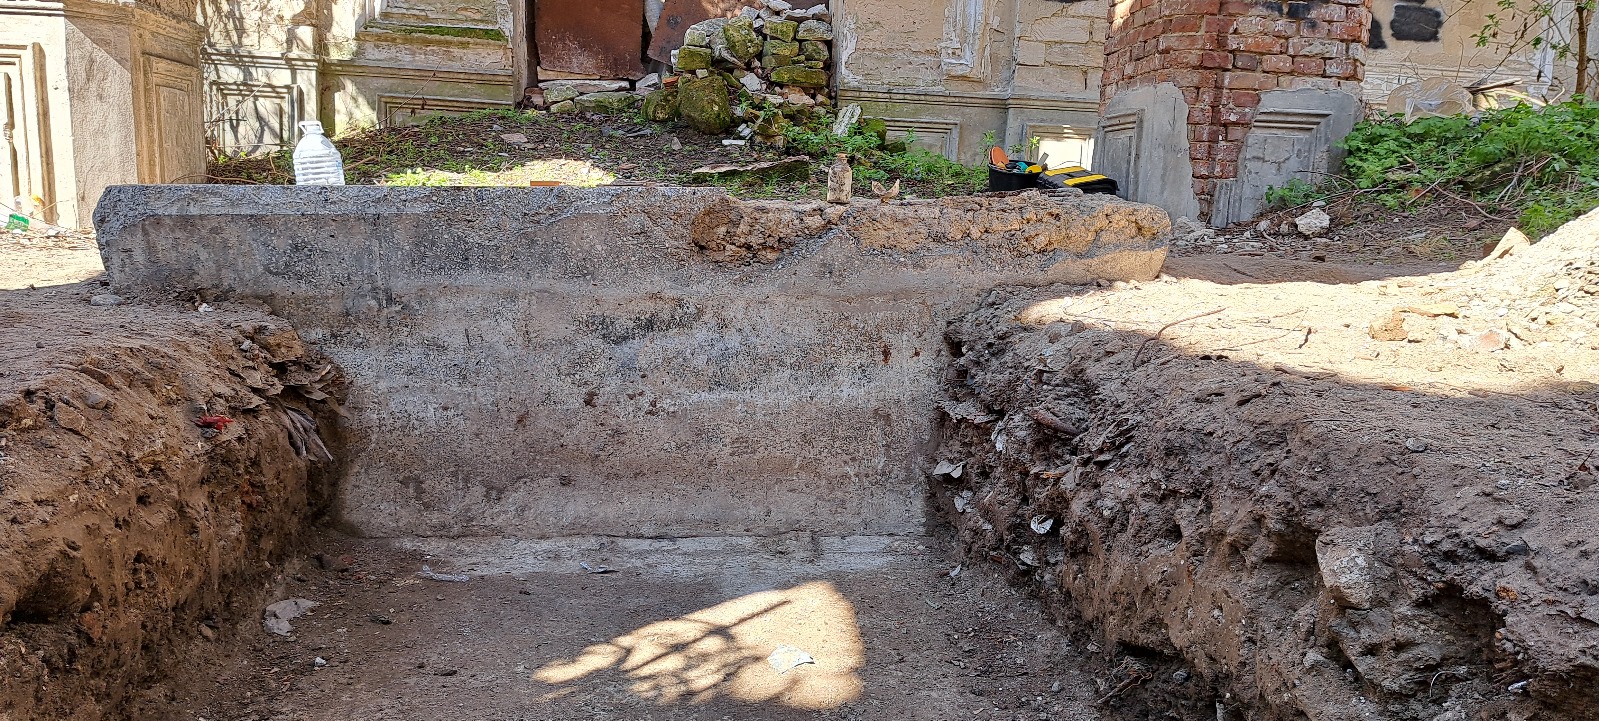 (ФОТО) Археологи проводят раскопки в ритуальном зале еврейского кладбища в Кишиневе